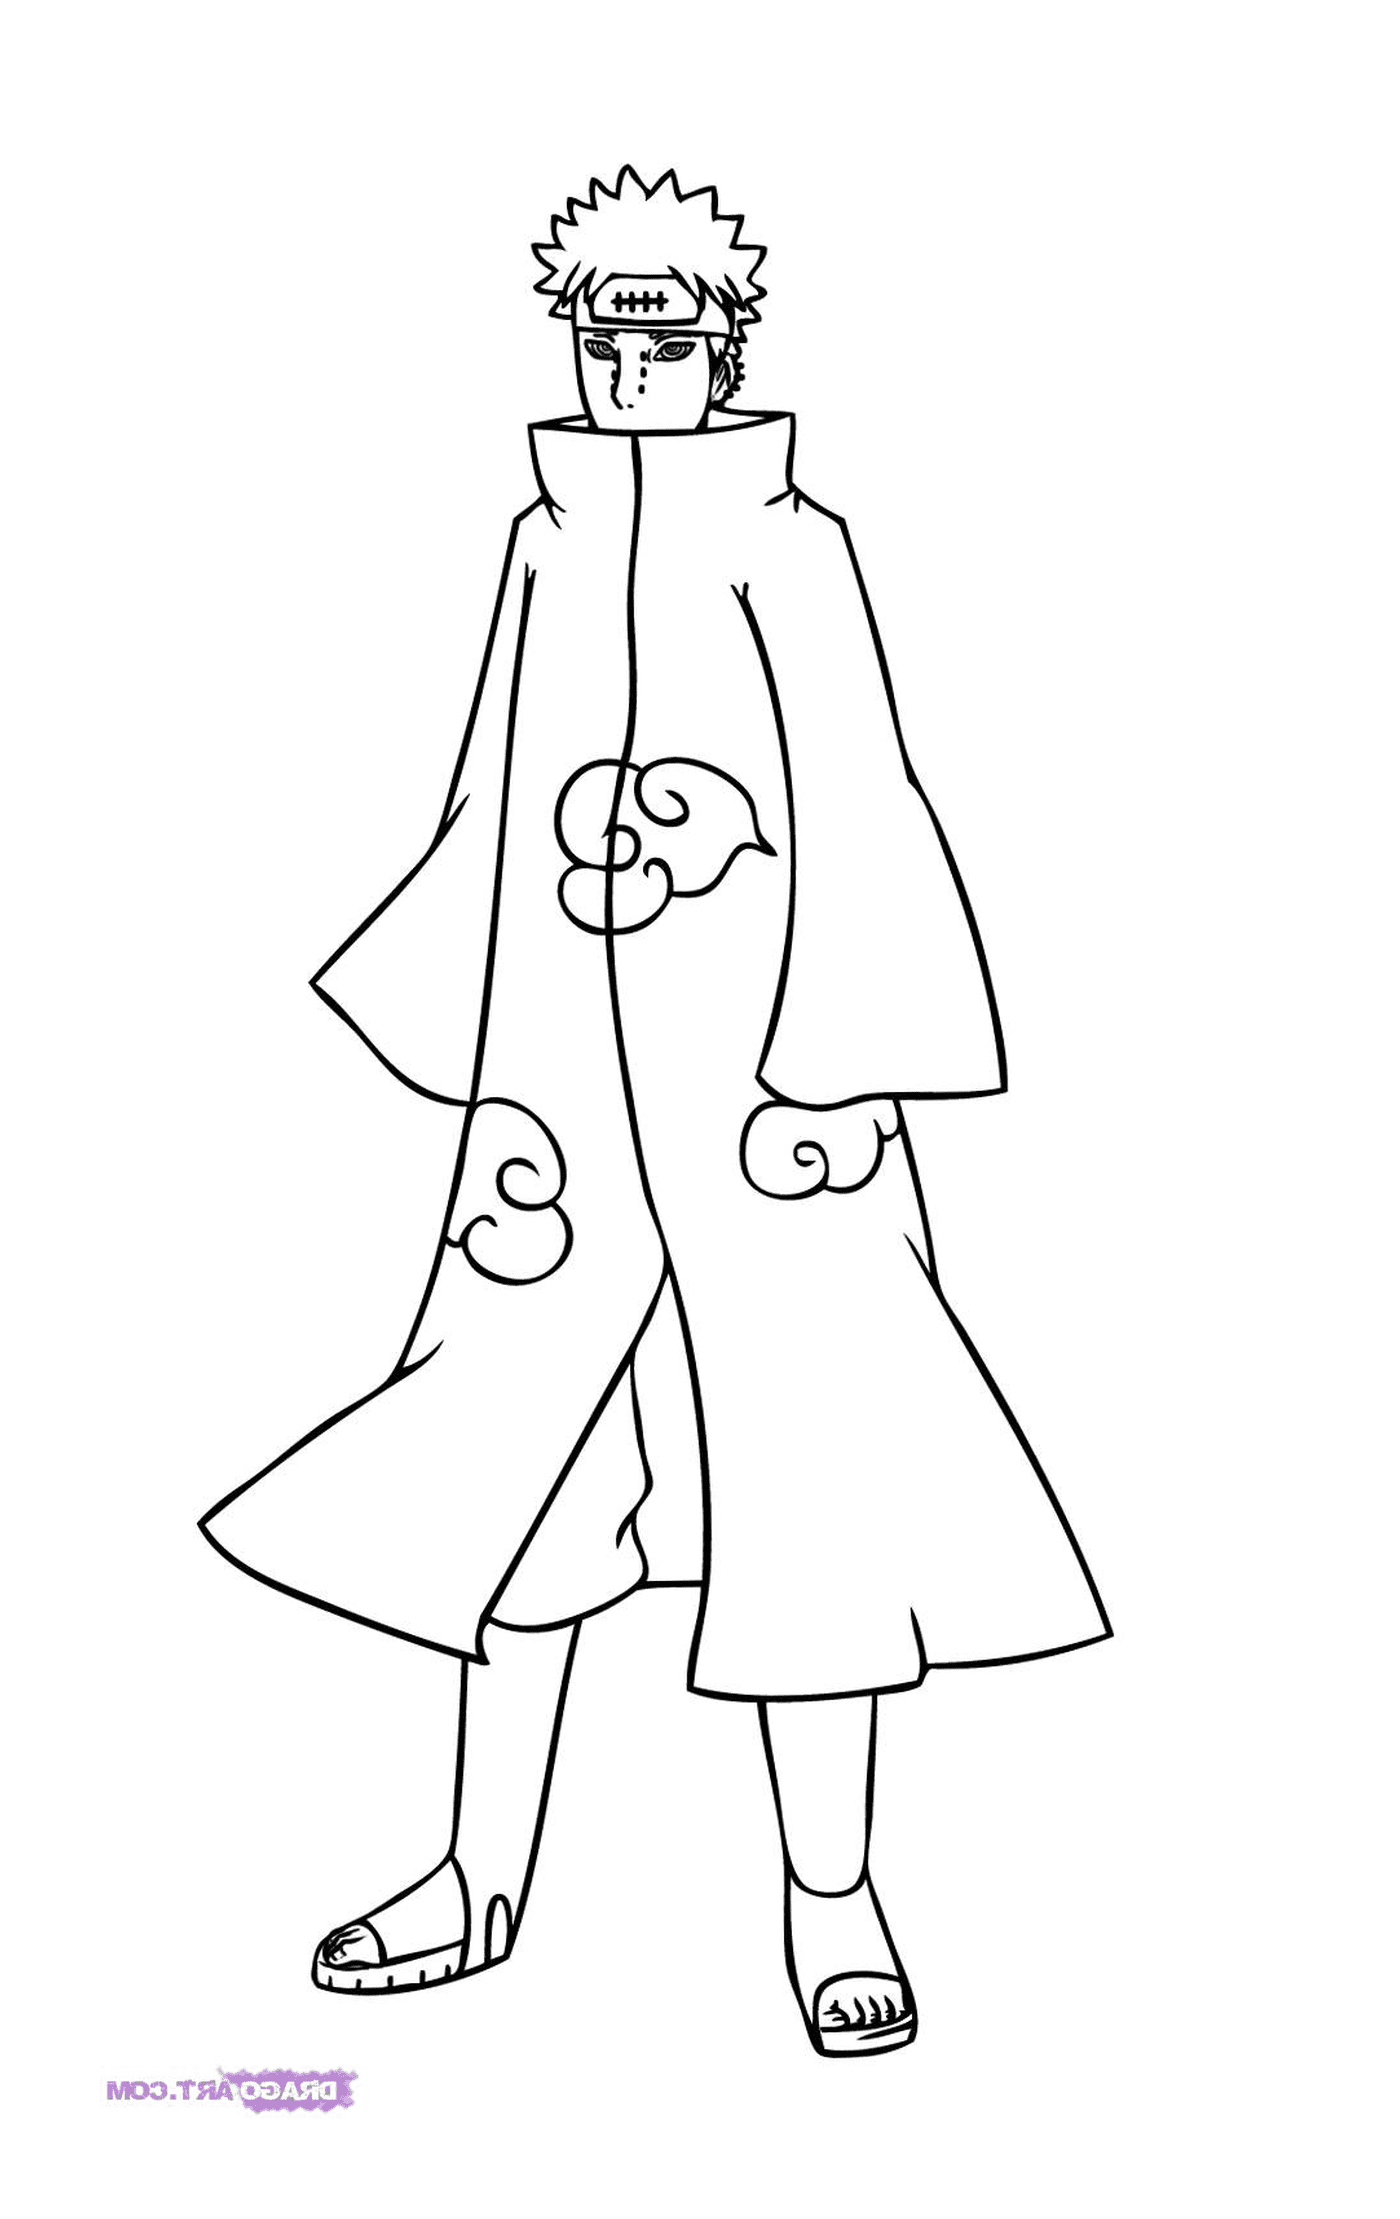  Uma mulher em um casaco longo 